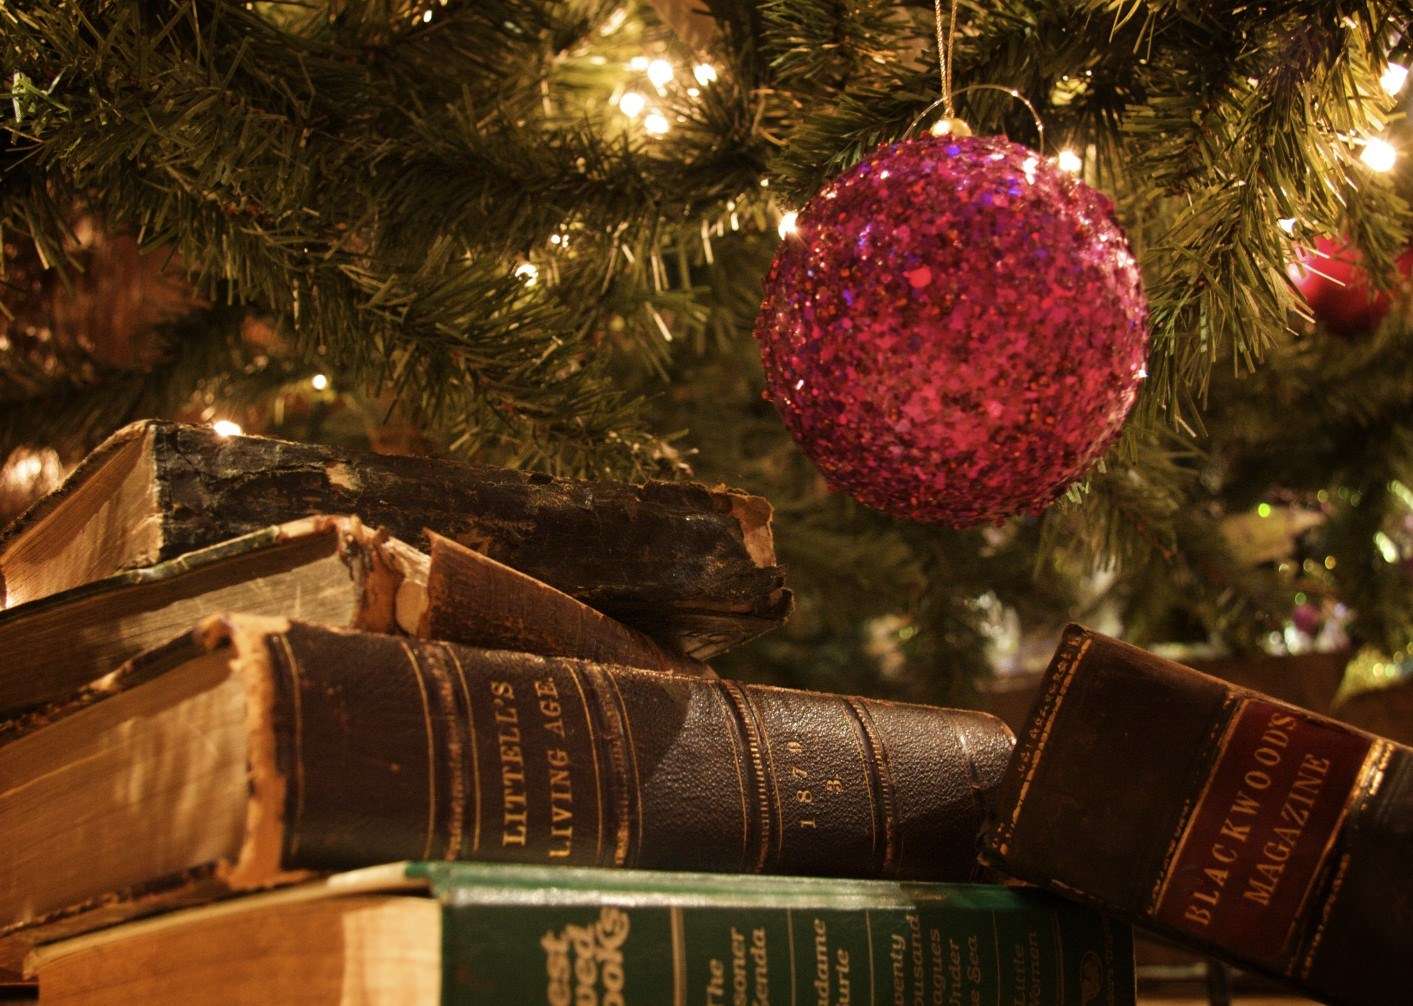 Idee Regalo Natale Libri.Idee Regalo Ecco 10 Libri Fantasy E Sci Fi Perfetti Per Gli Appassionati